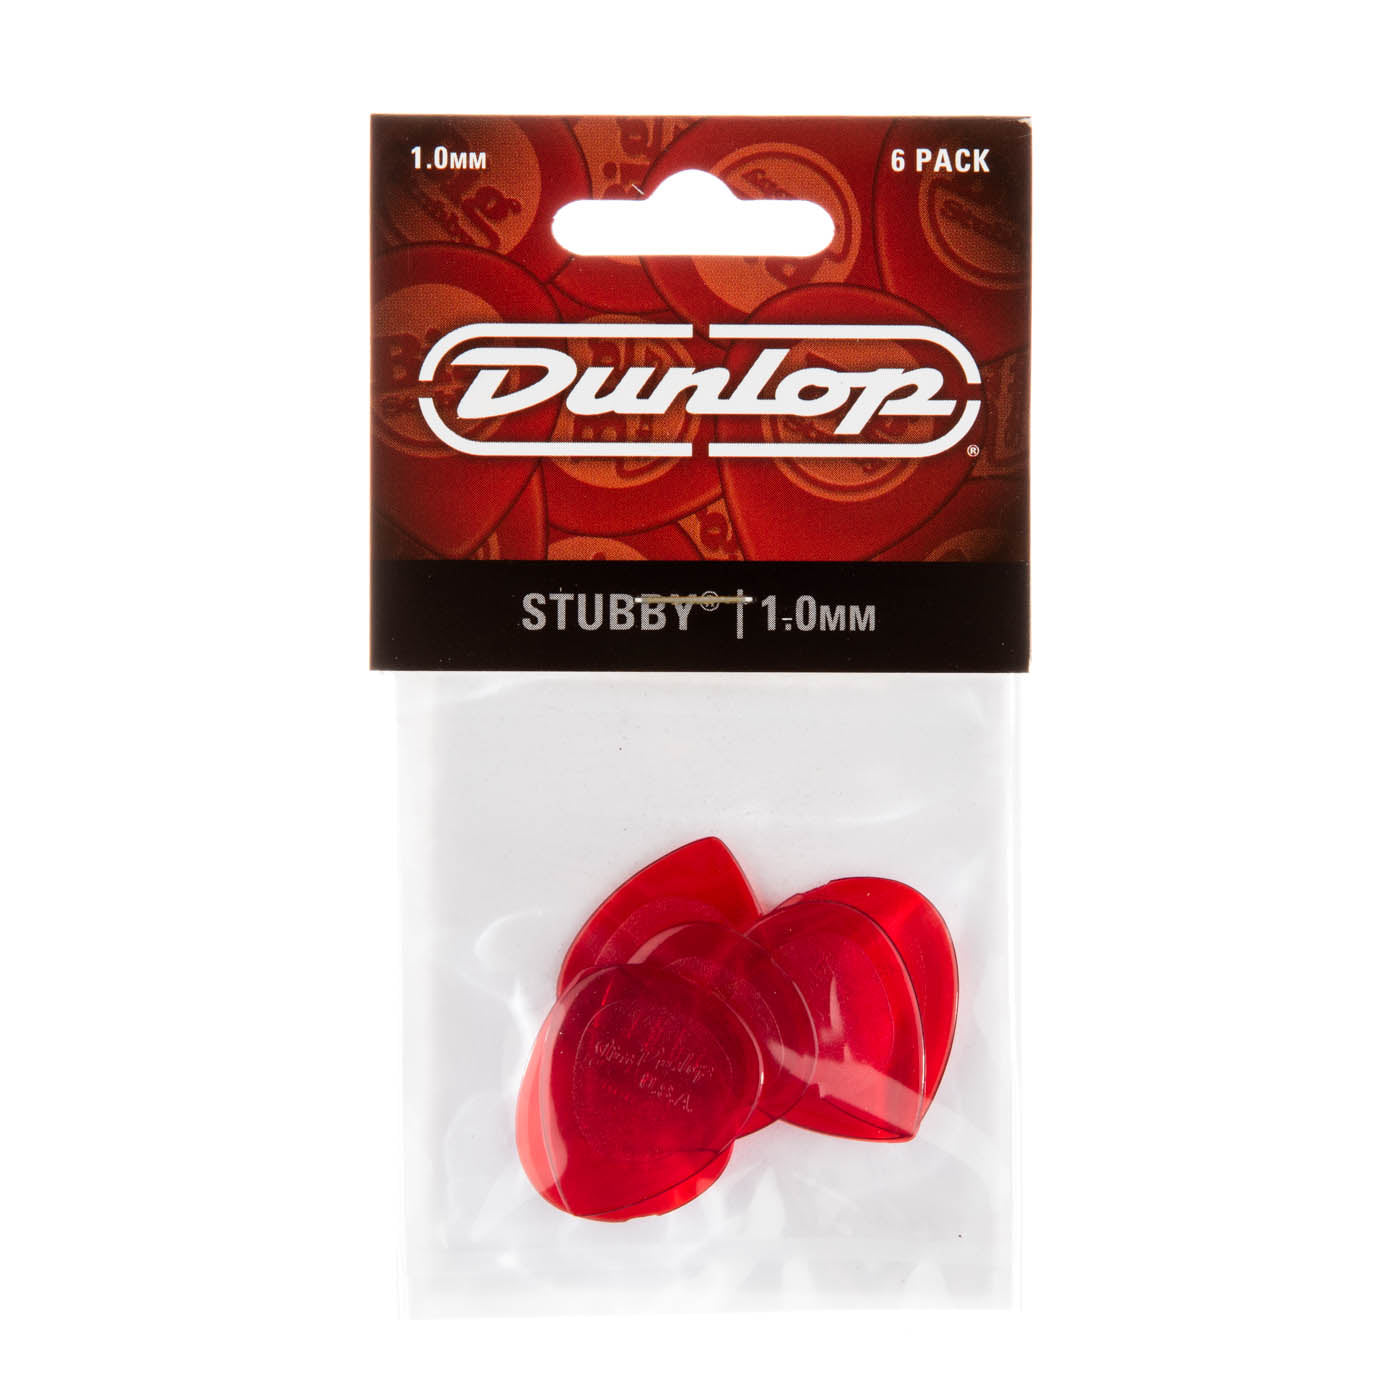 Dunlop 1.0mm Stubby® Jazz Guitar Picks (6/pack)